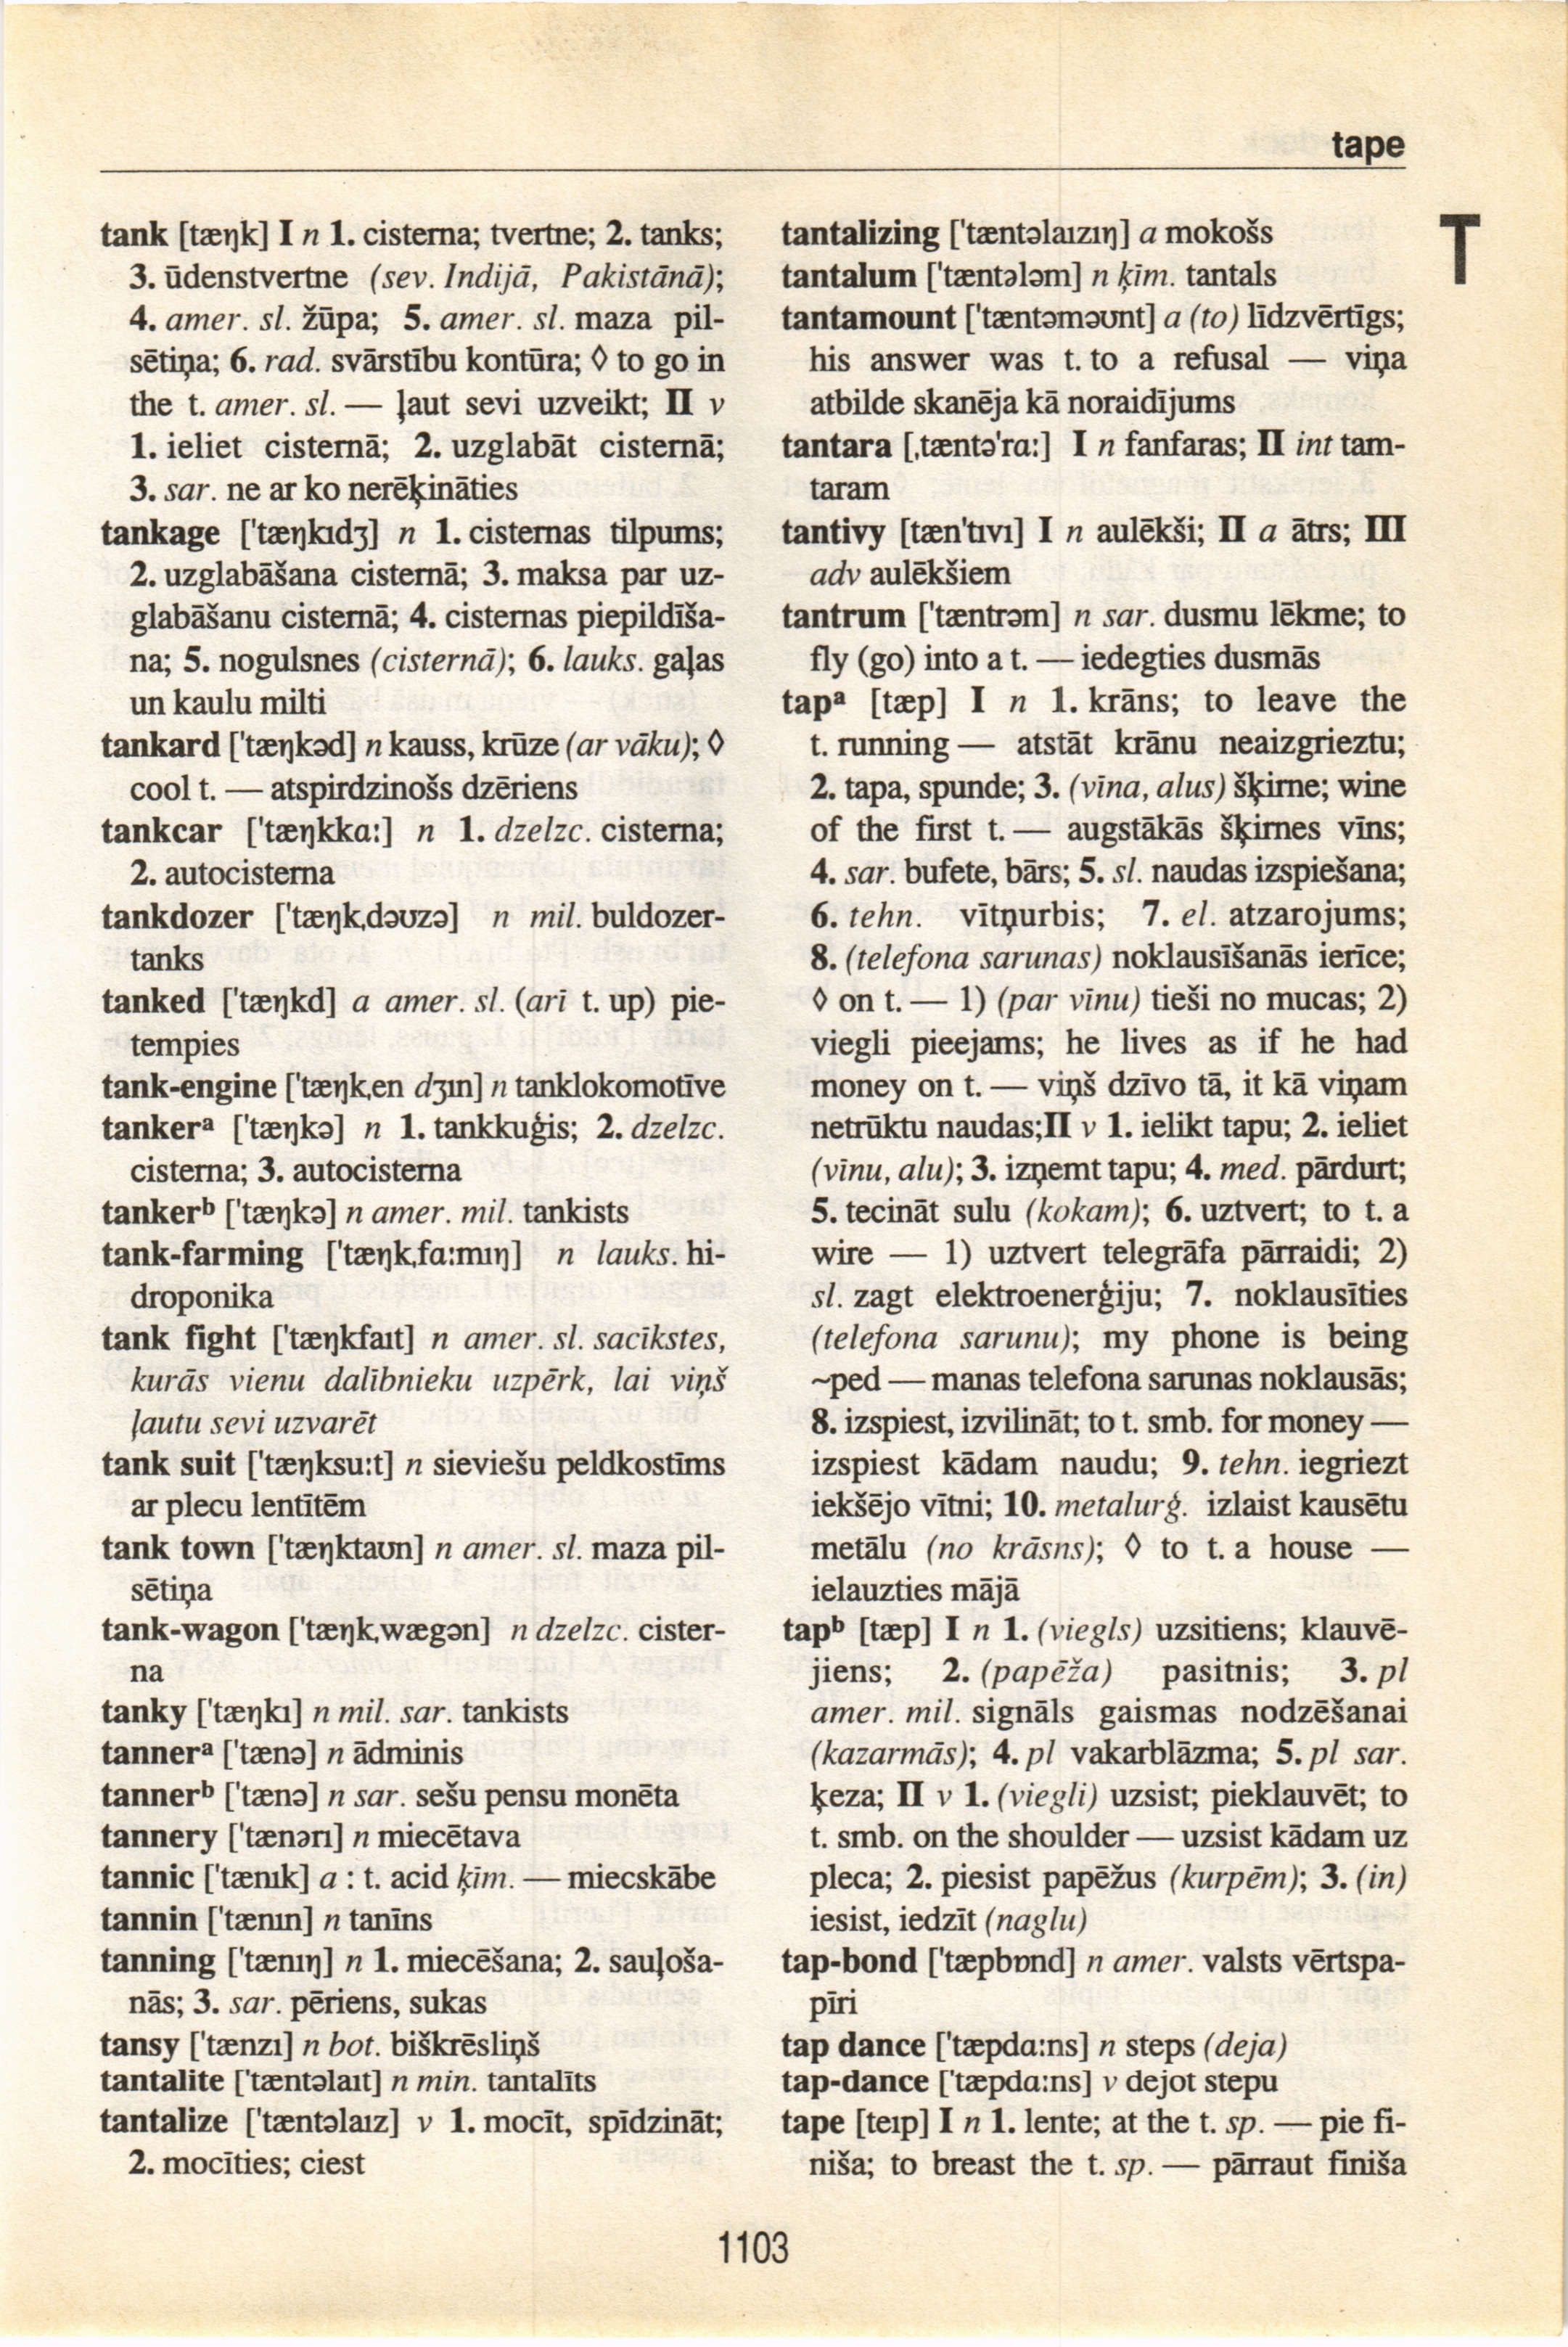 1103 (English-Latvian dictionary : Anglu-latviesu vardnica)